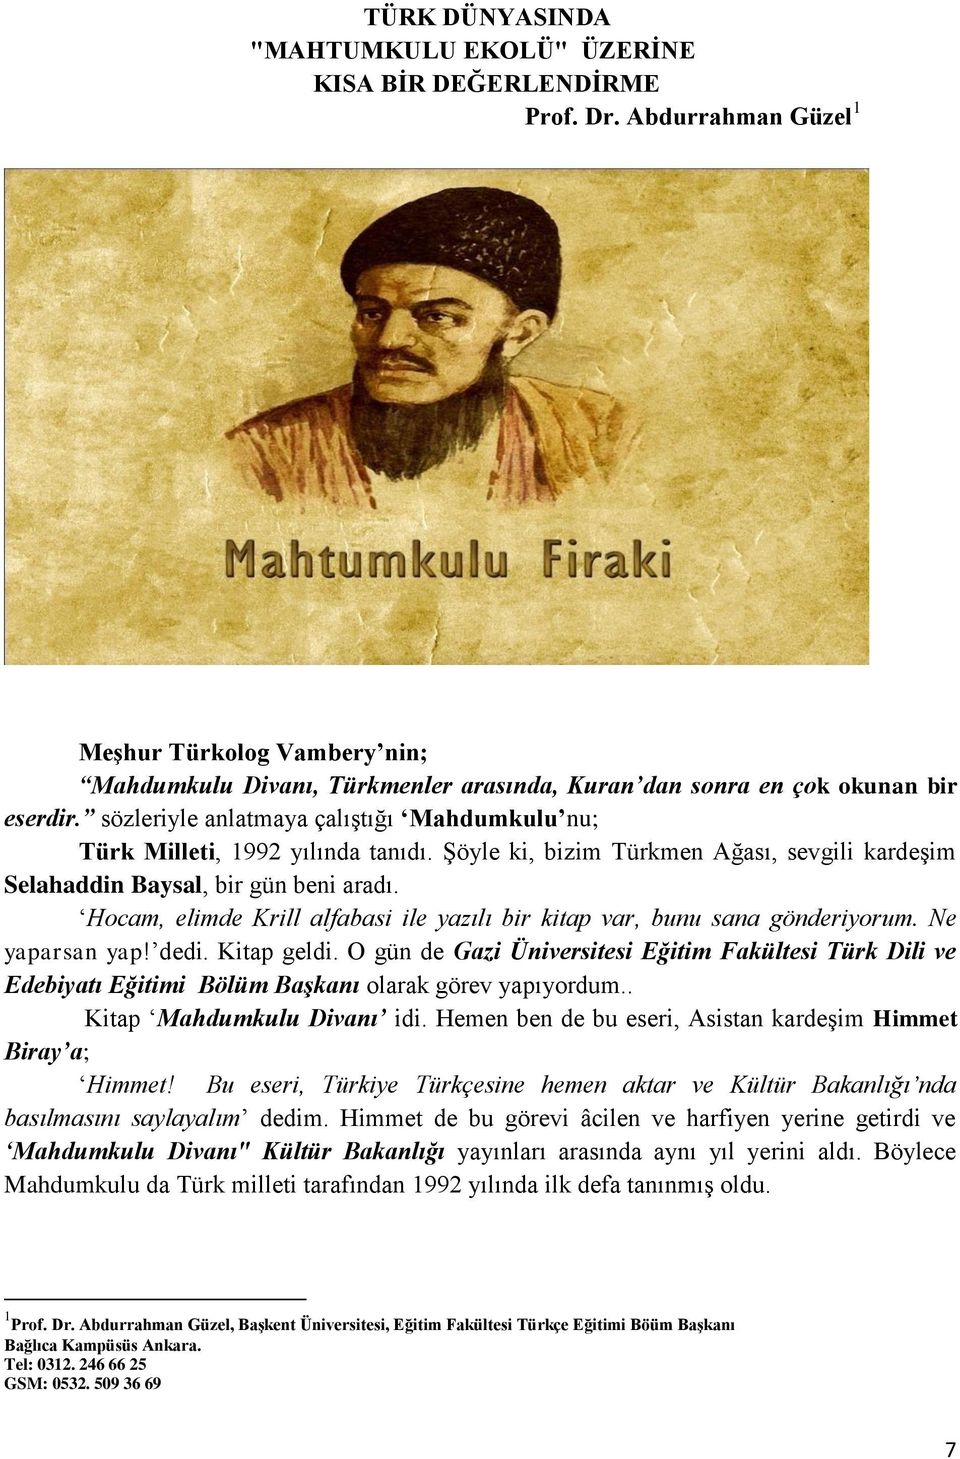 sözleriyle anlatmaya çalıştığı Mahdumkulu nu; Türk Milleti, 1992 yılında tanıdı. Şöyle ki, bizim Türkmen Ağası, sevgili kardeşim Selahaddin Baysal, bir gün beni aradı.